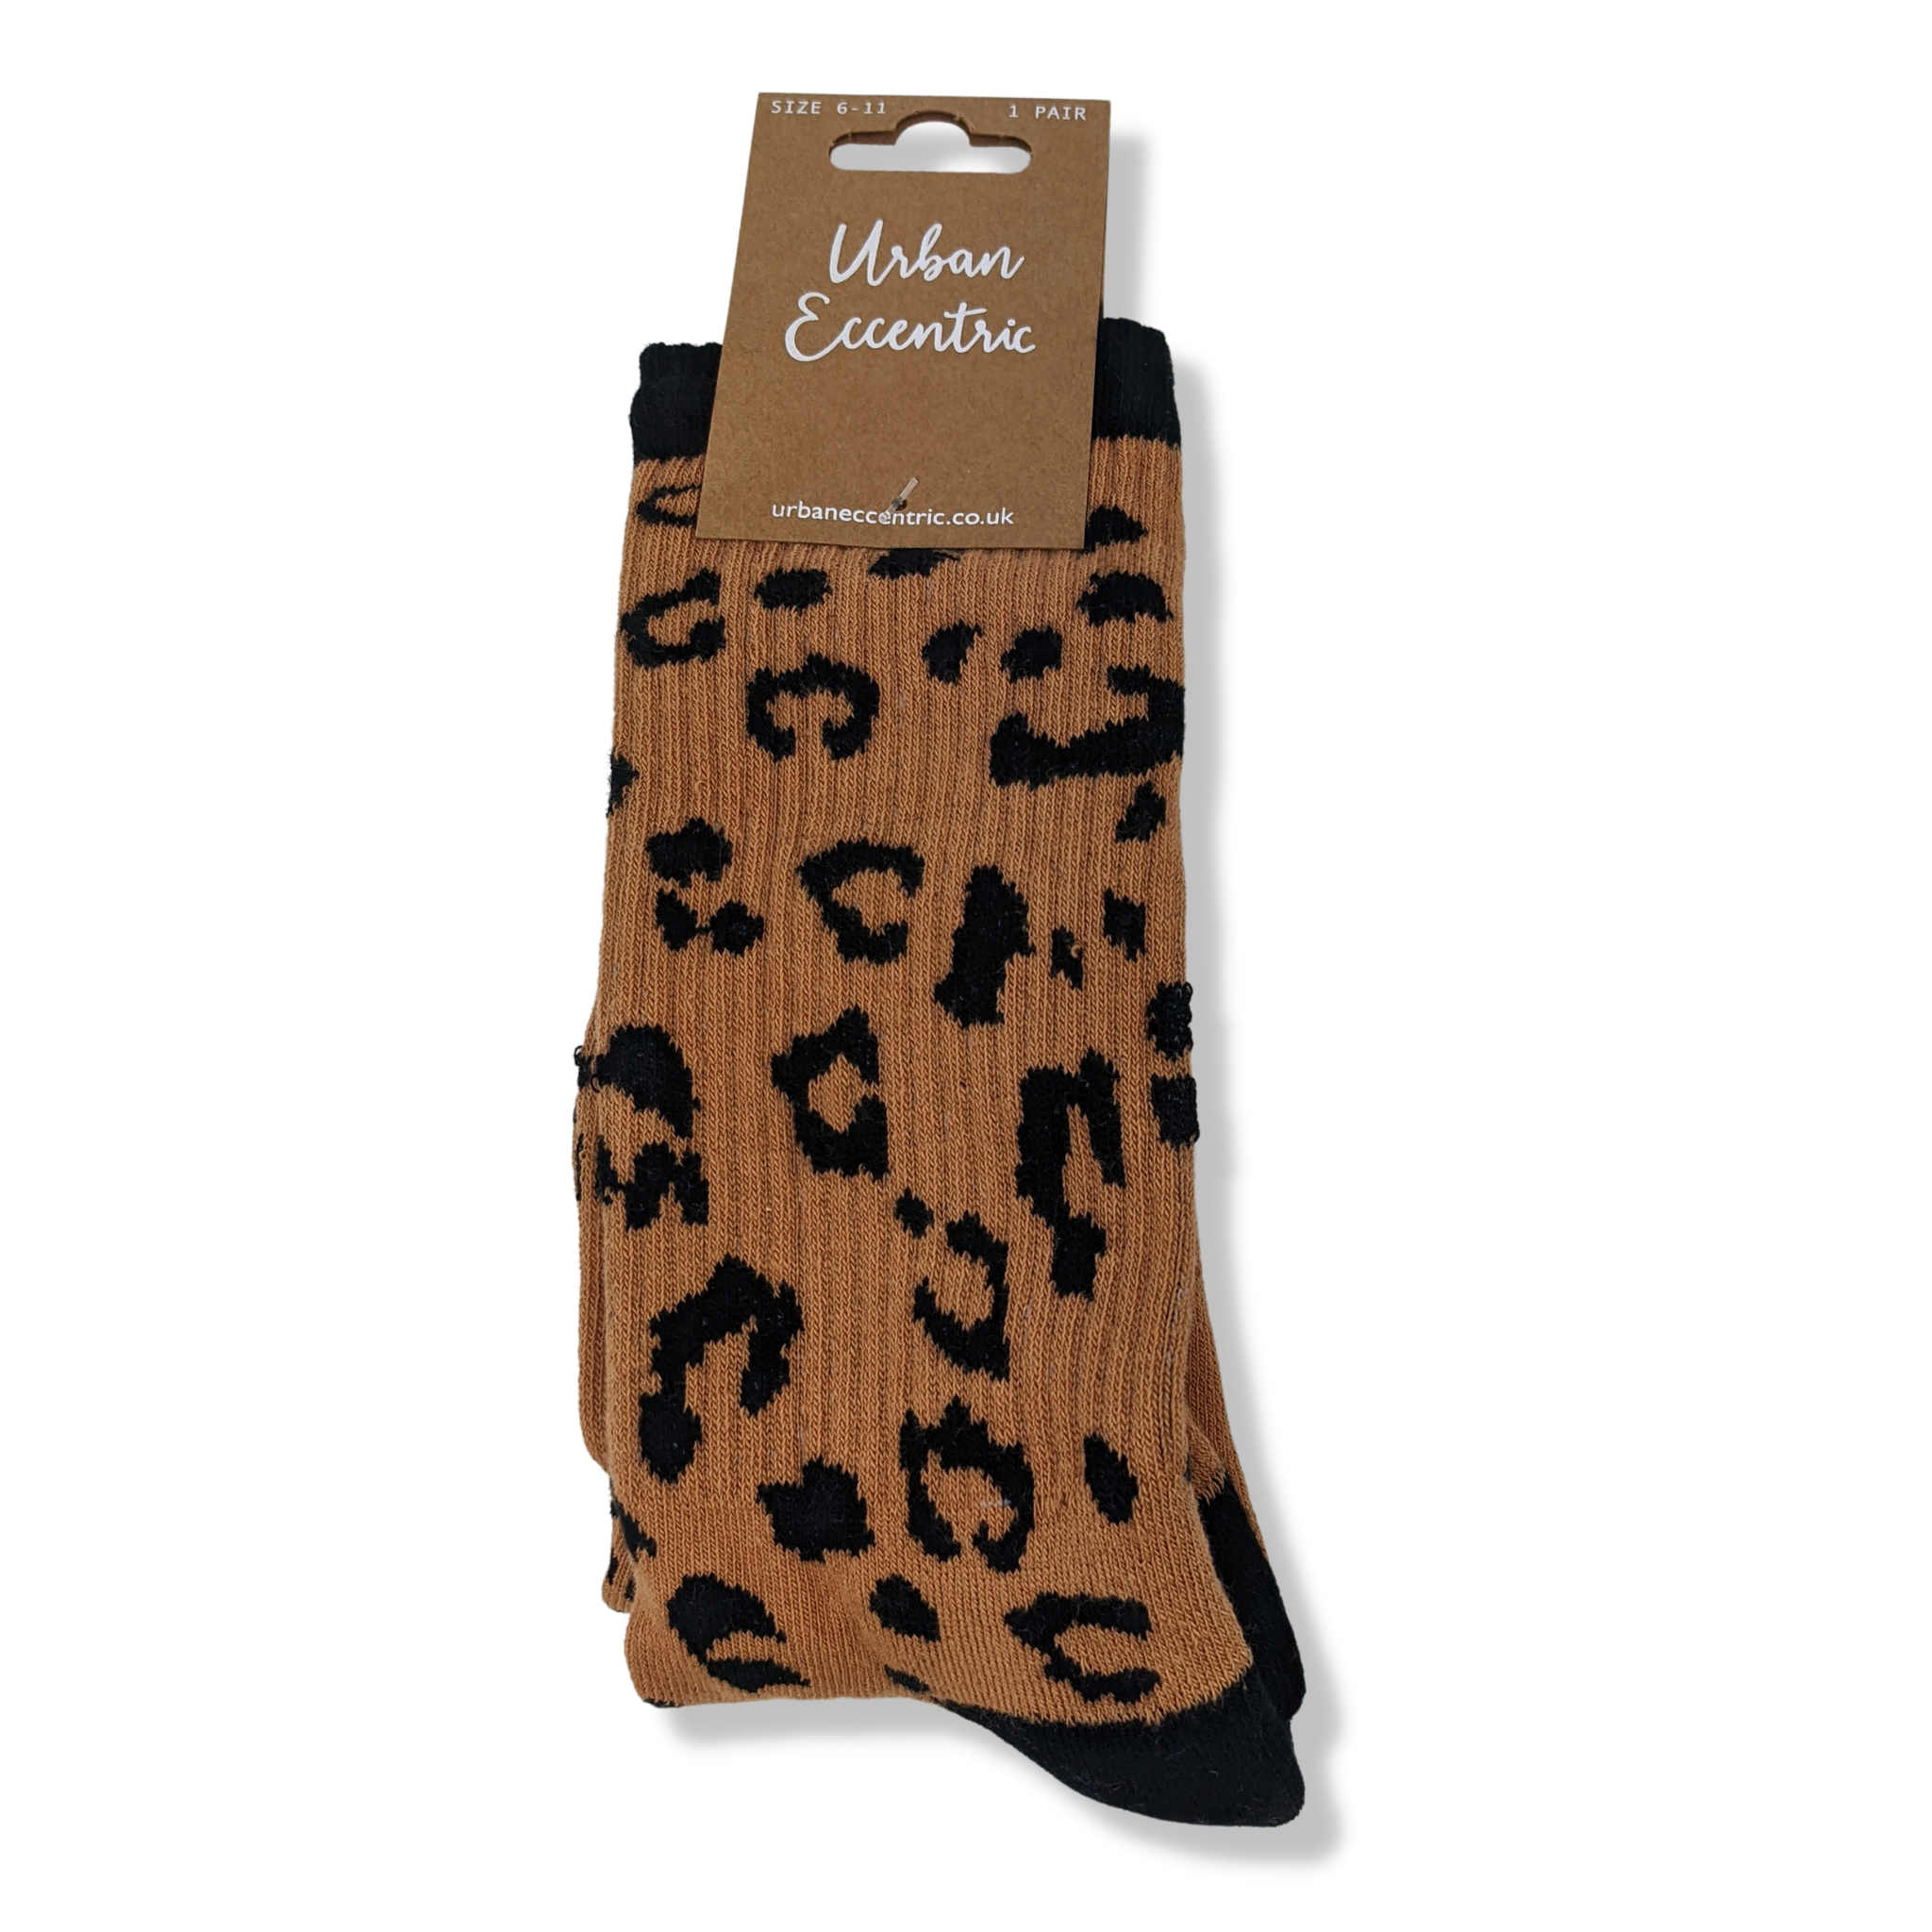 Leopard socks from Urban Eccentric (Size M/L)